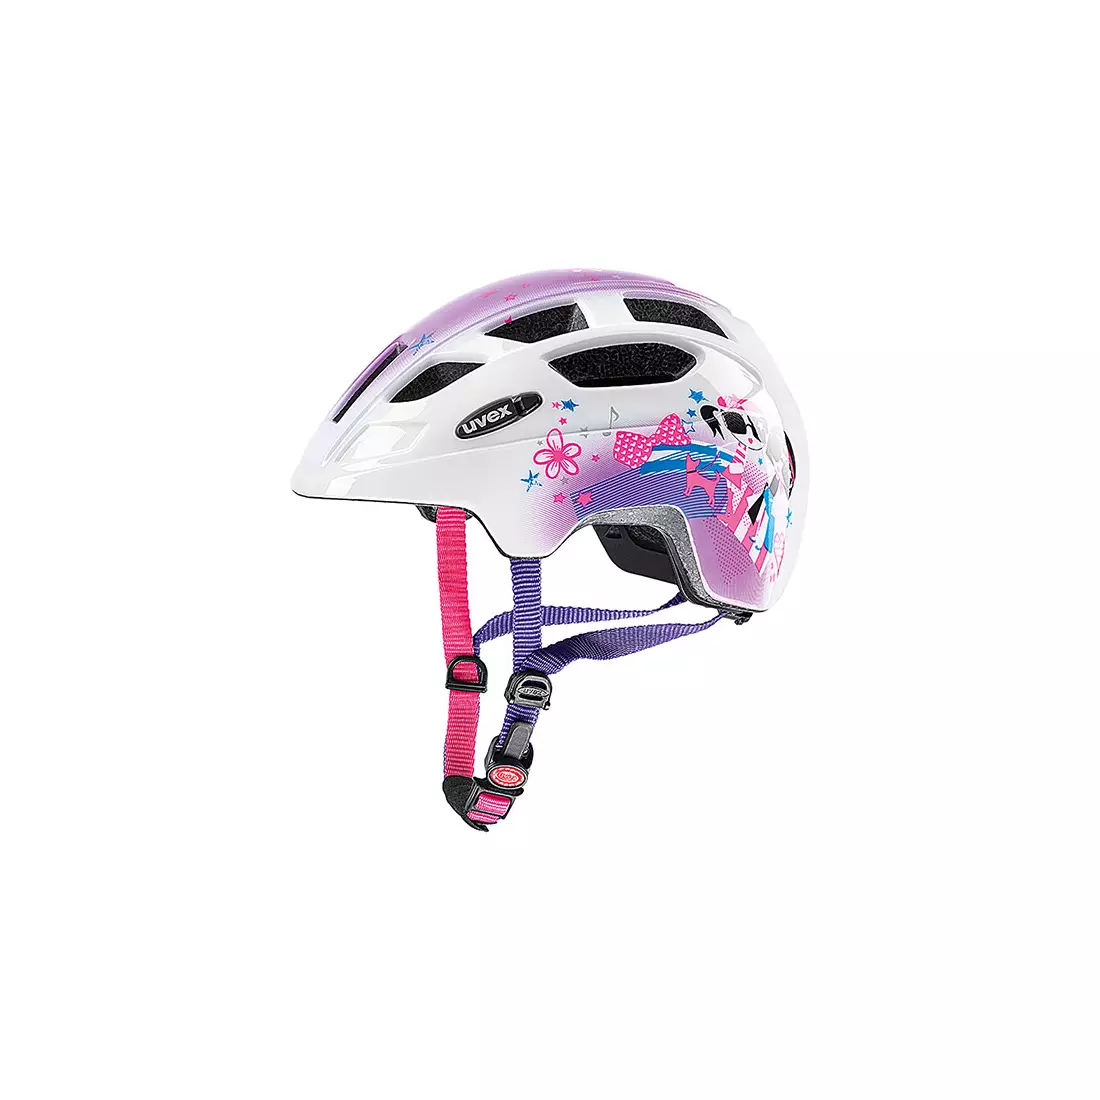 UVEX FINALE JUNIOR PINK GIRL bicycle helmet